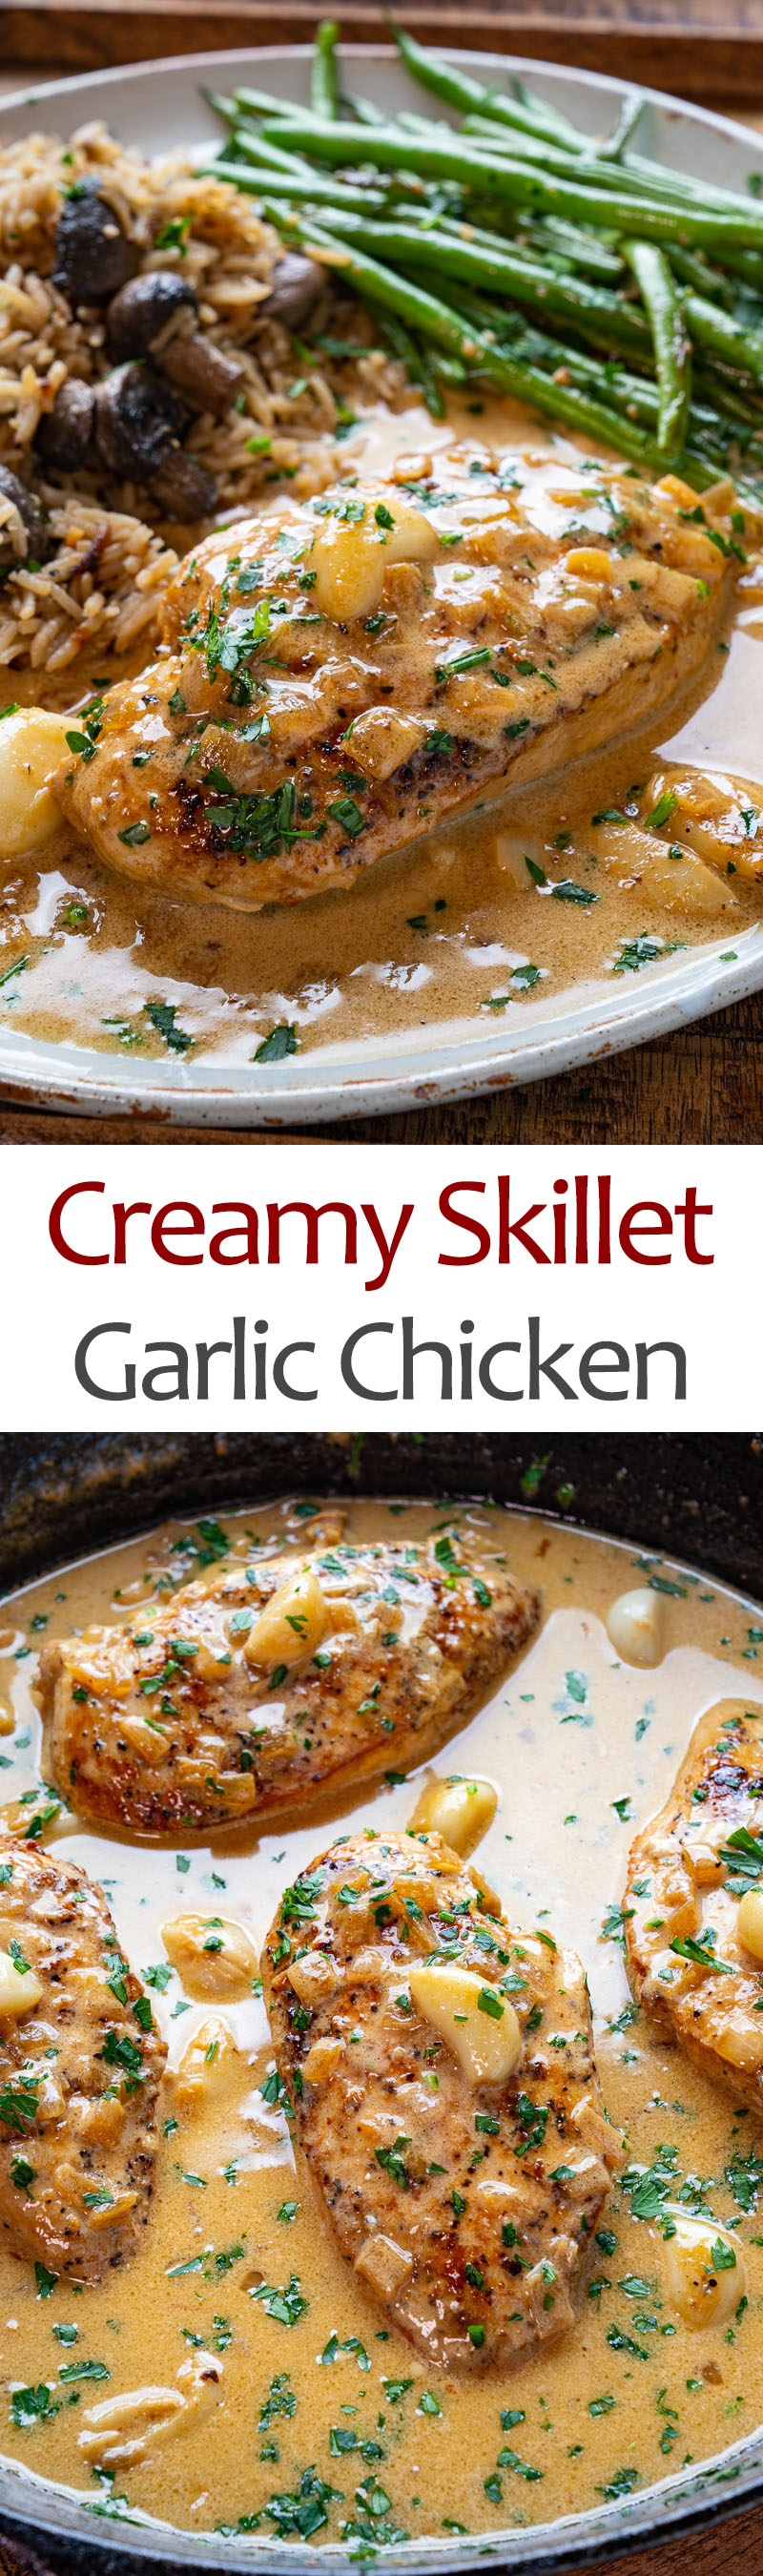 Creamy Skillet Garlic Chicken